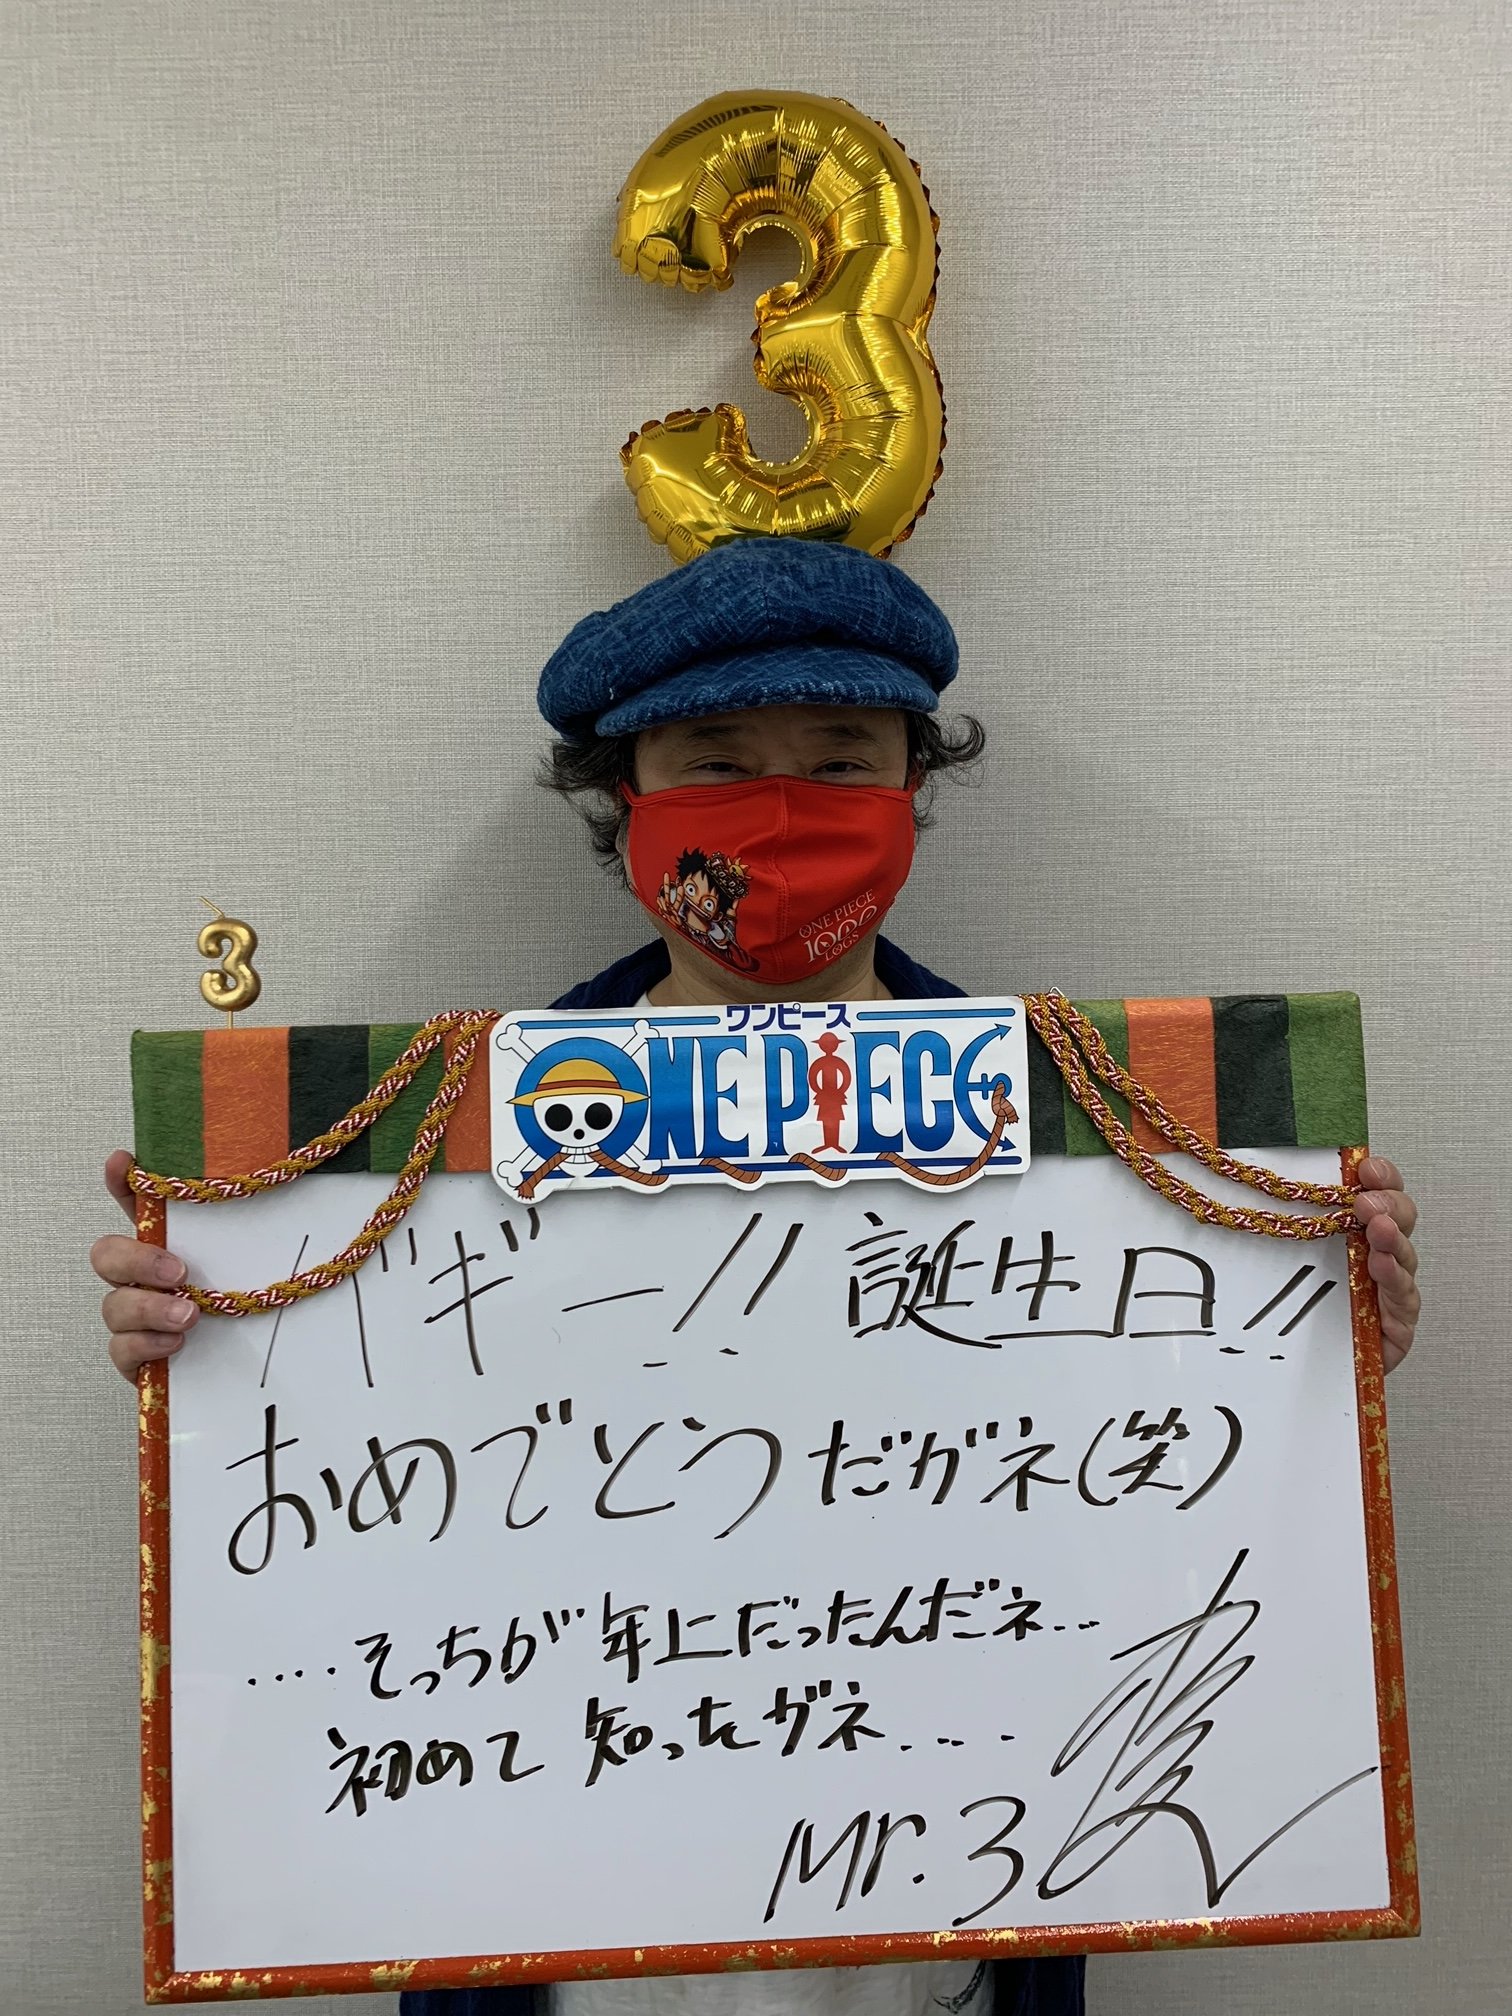 One Piece Com ワンピース 8月8日はバギーの誕生日 Mr 3役 檜山修之さんからコメントをいただきました バギー誕生祭21 Onepiece T Co 1khiygqknp Twitter